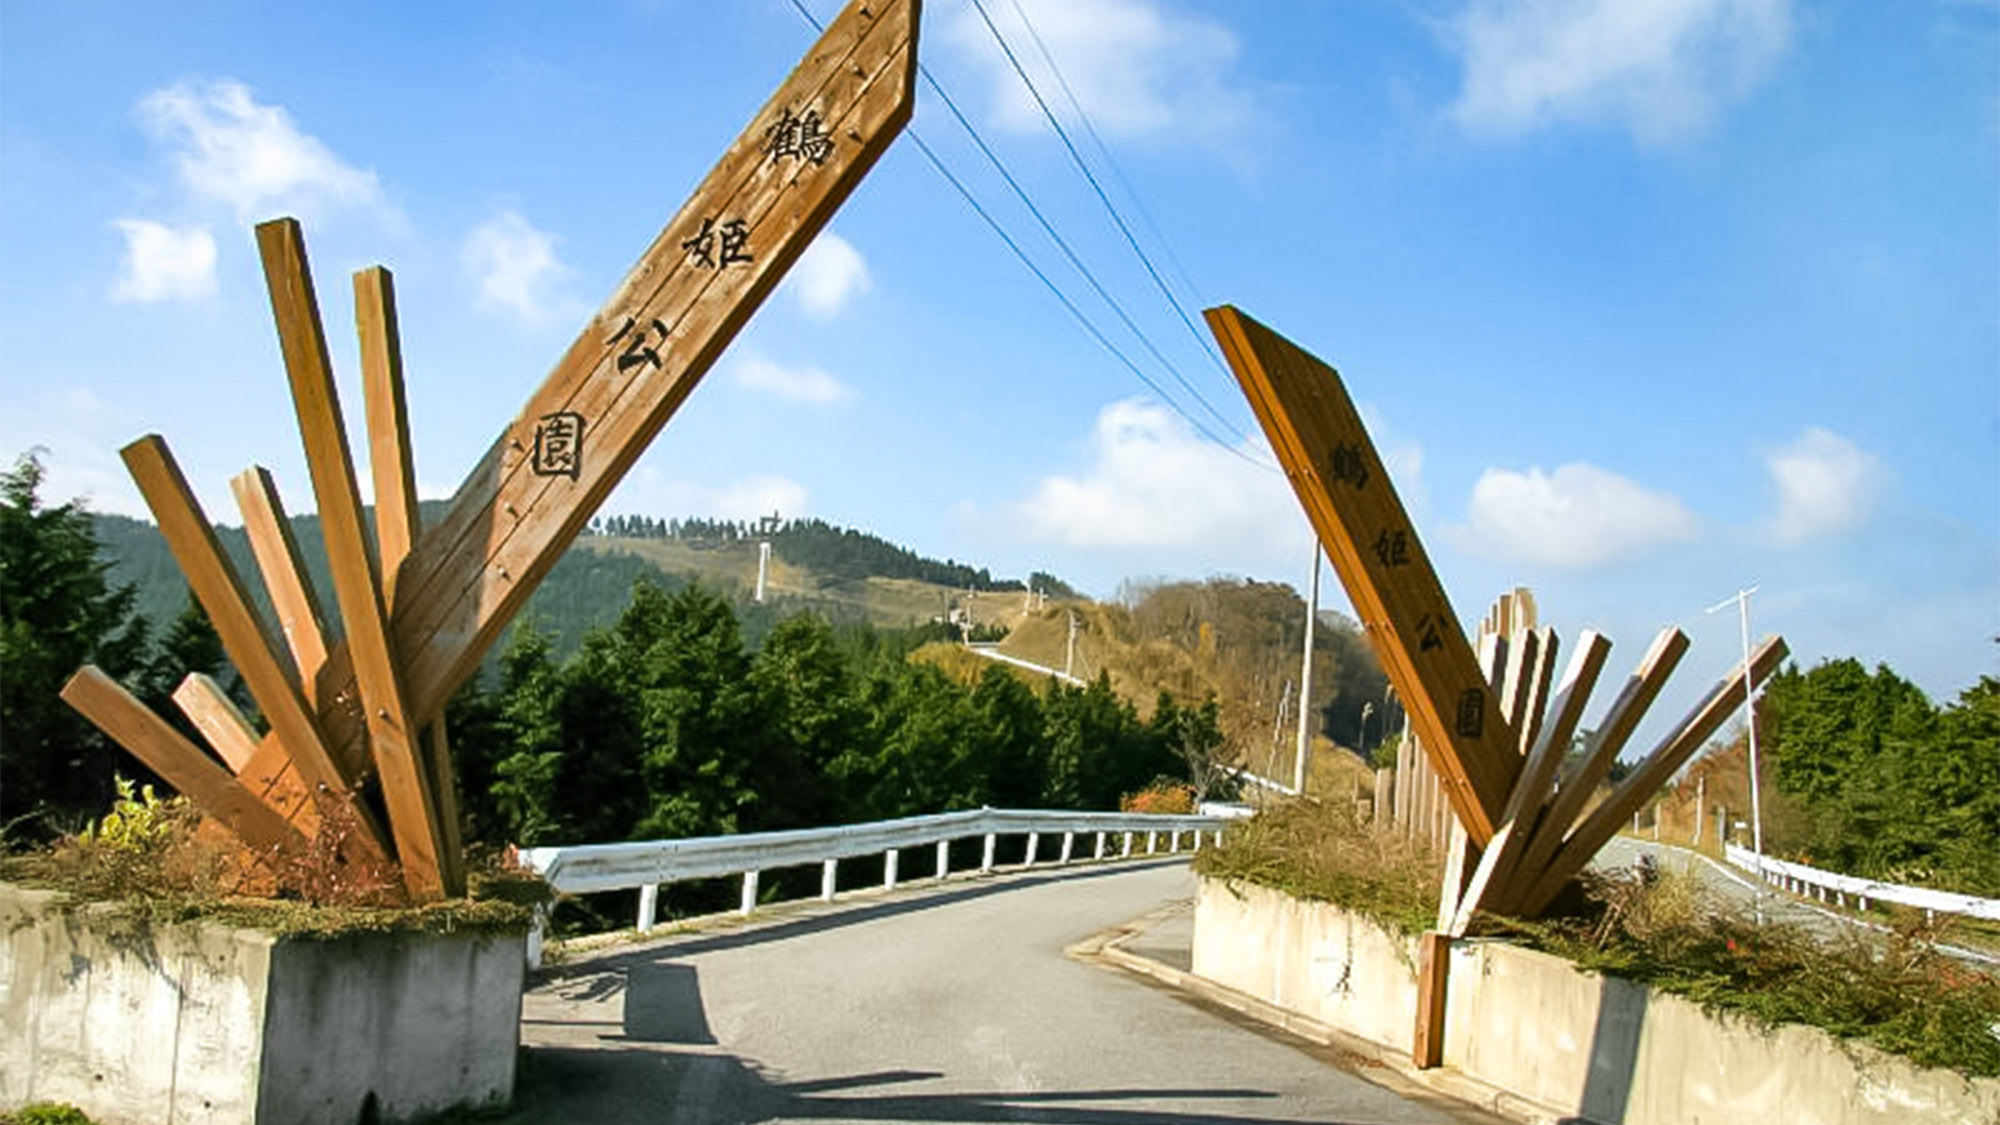 ・【周辺観光】鶴姫公園は、晴れた日には四国まで見渡せるほどの絶景スポット